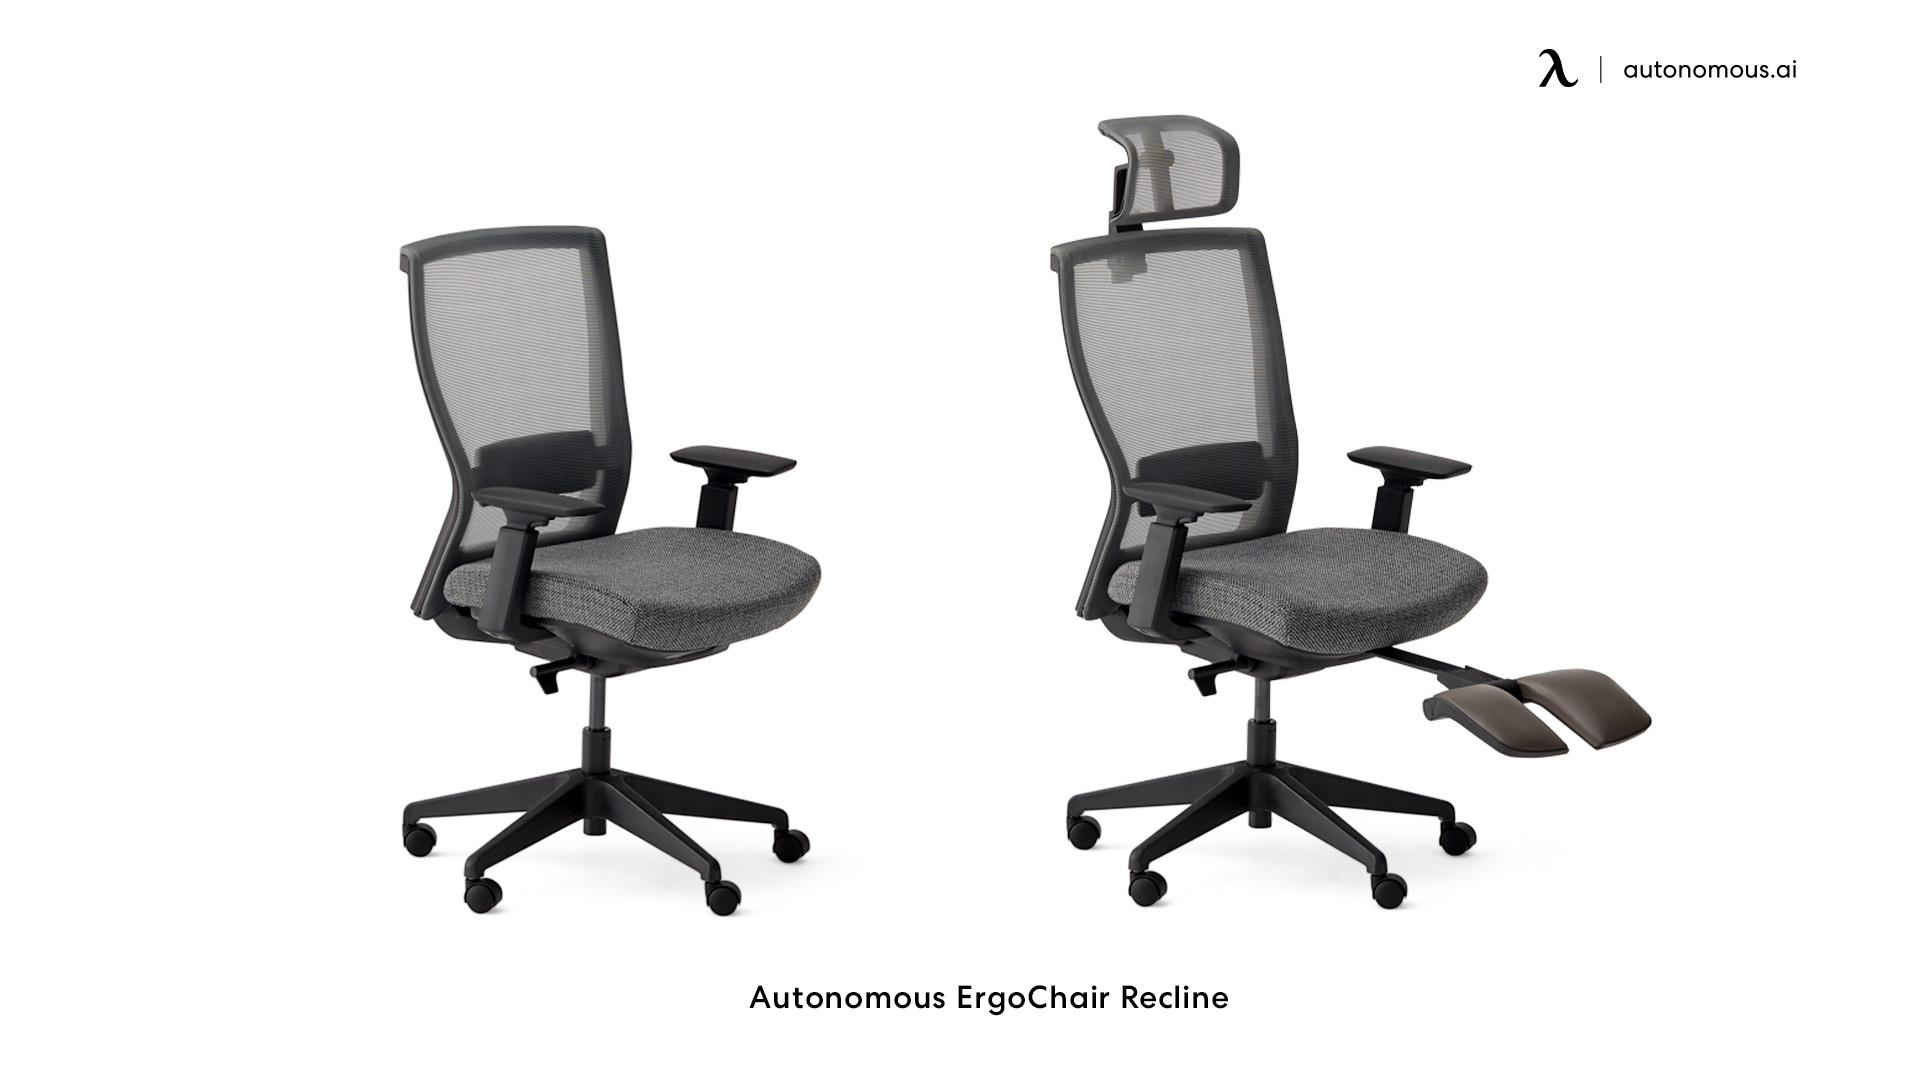 ErgoChair Recline fabric swivel office chair